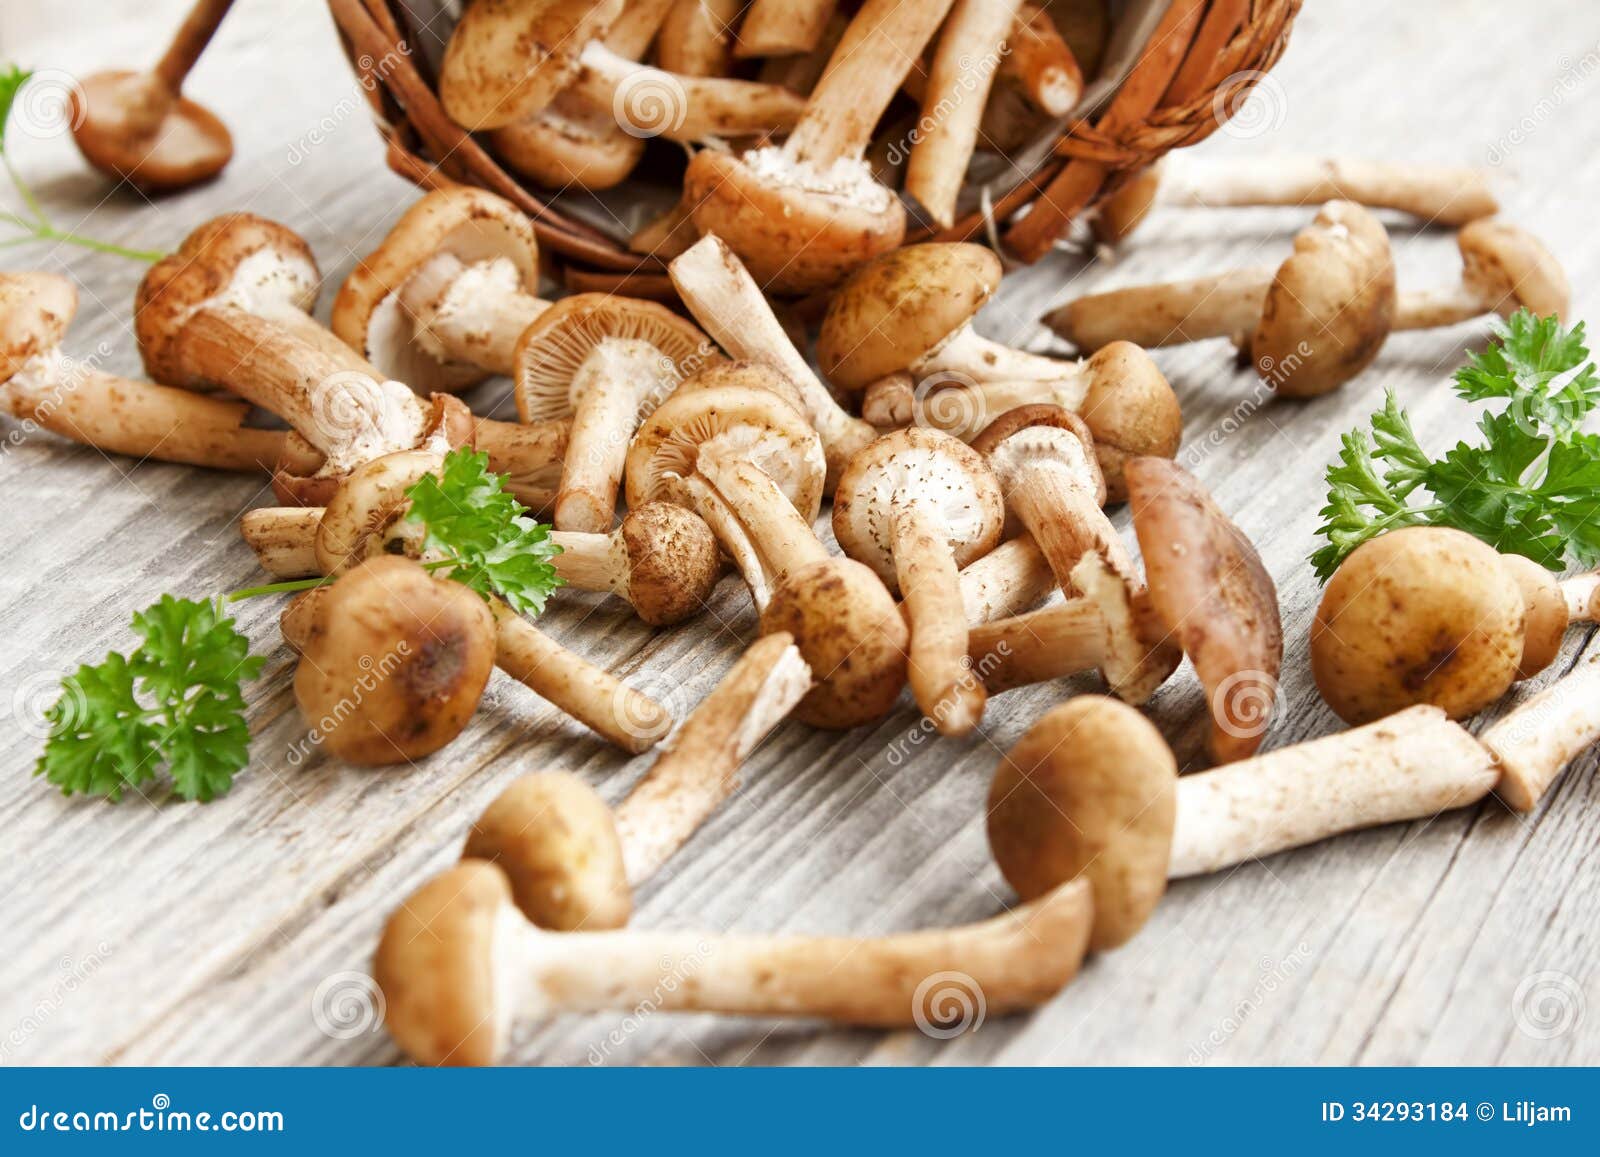 Frische Pilze (Armillaria Mellea) Stockfoto - Bild von gruppe ...